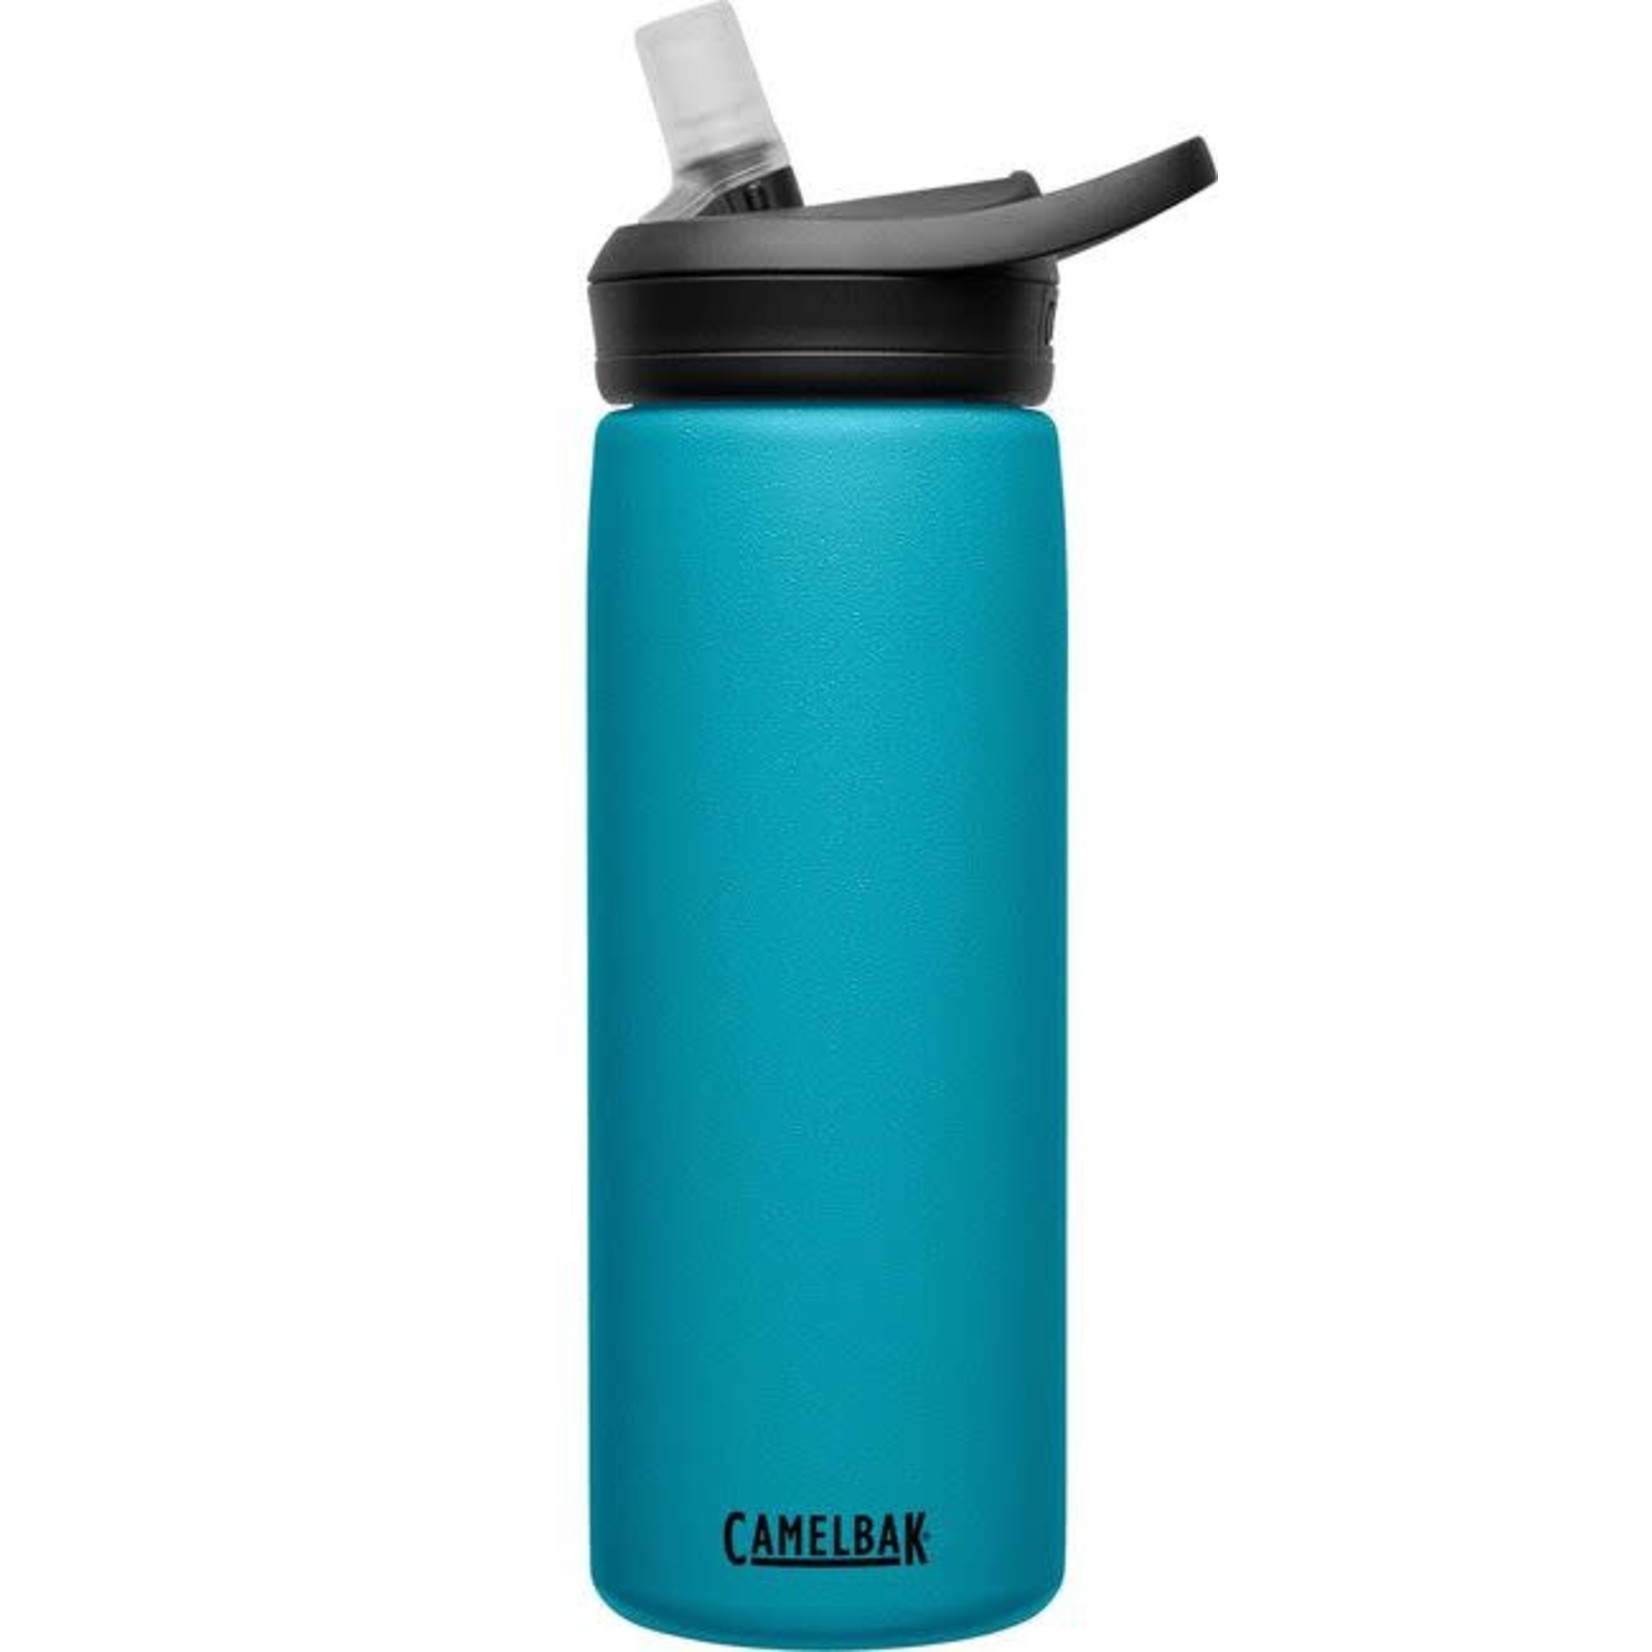 CAMELBAK Camelbak Eddy+ Insulated Stainless Steel Water bottle